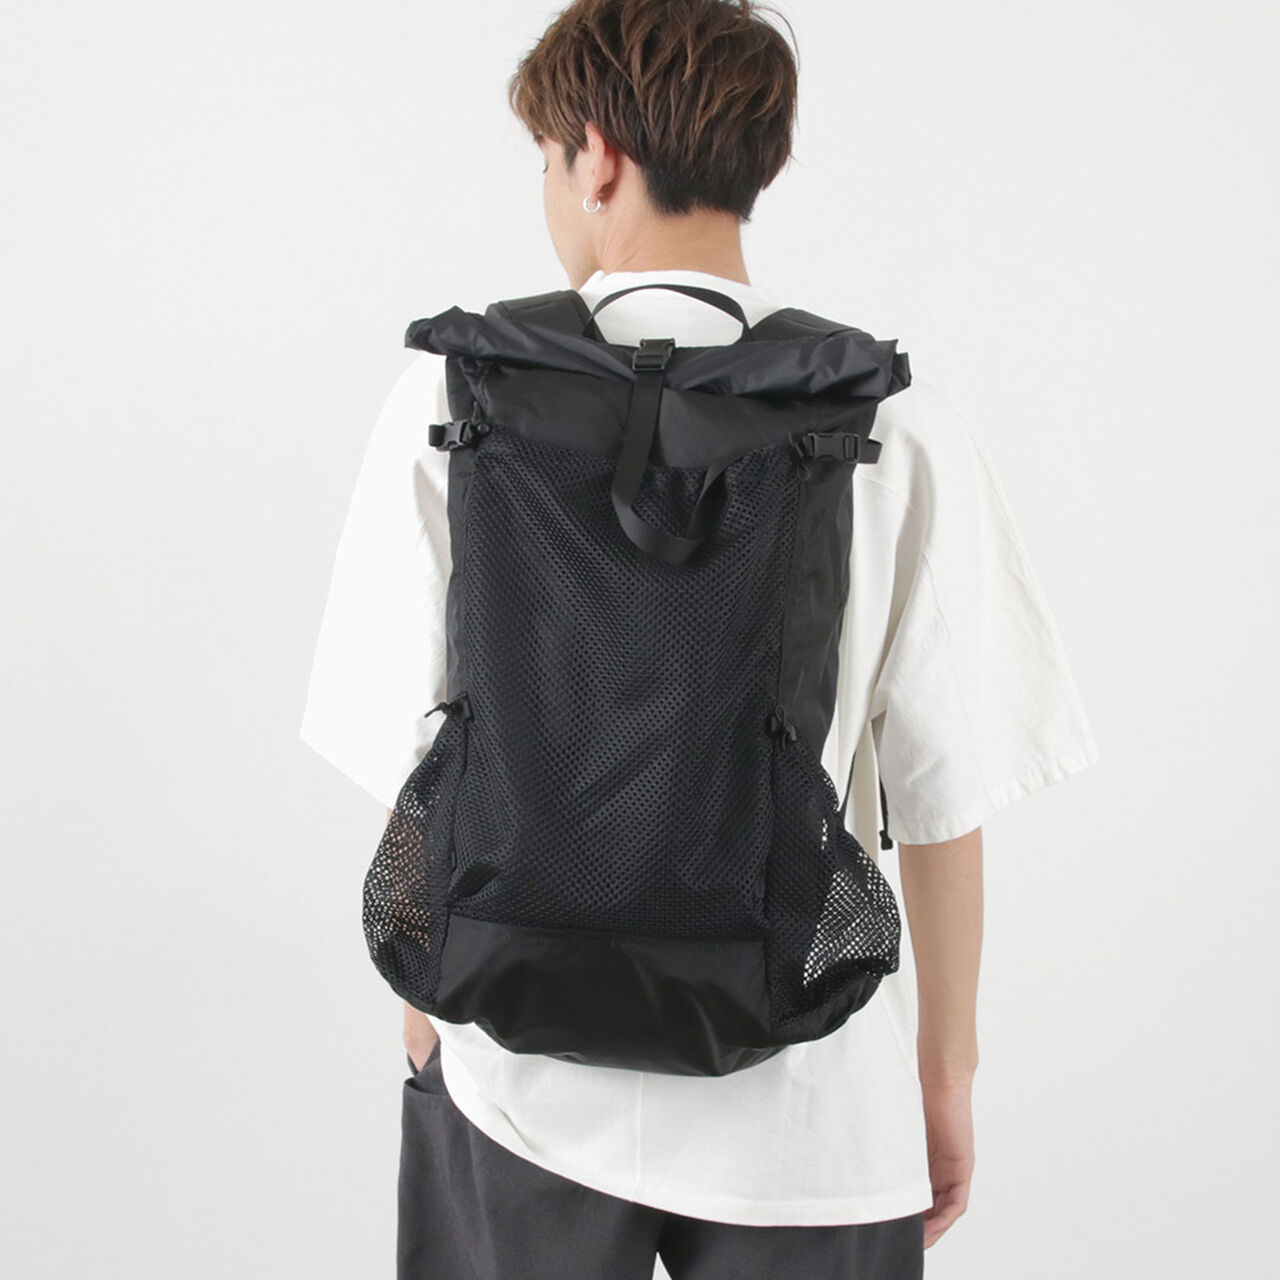 Bamar Ultralight Hiking Backpack,Black, large image number 0